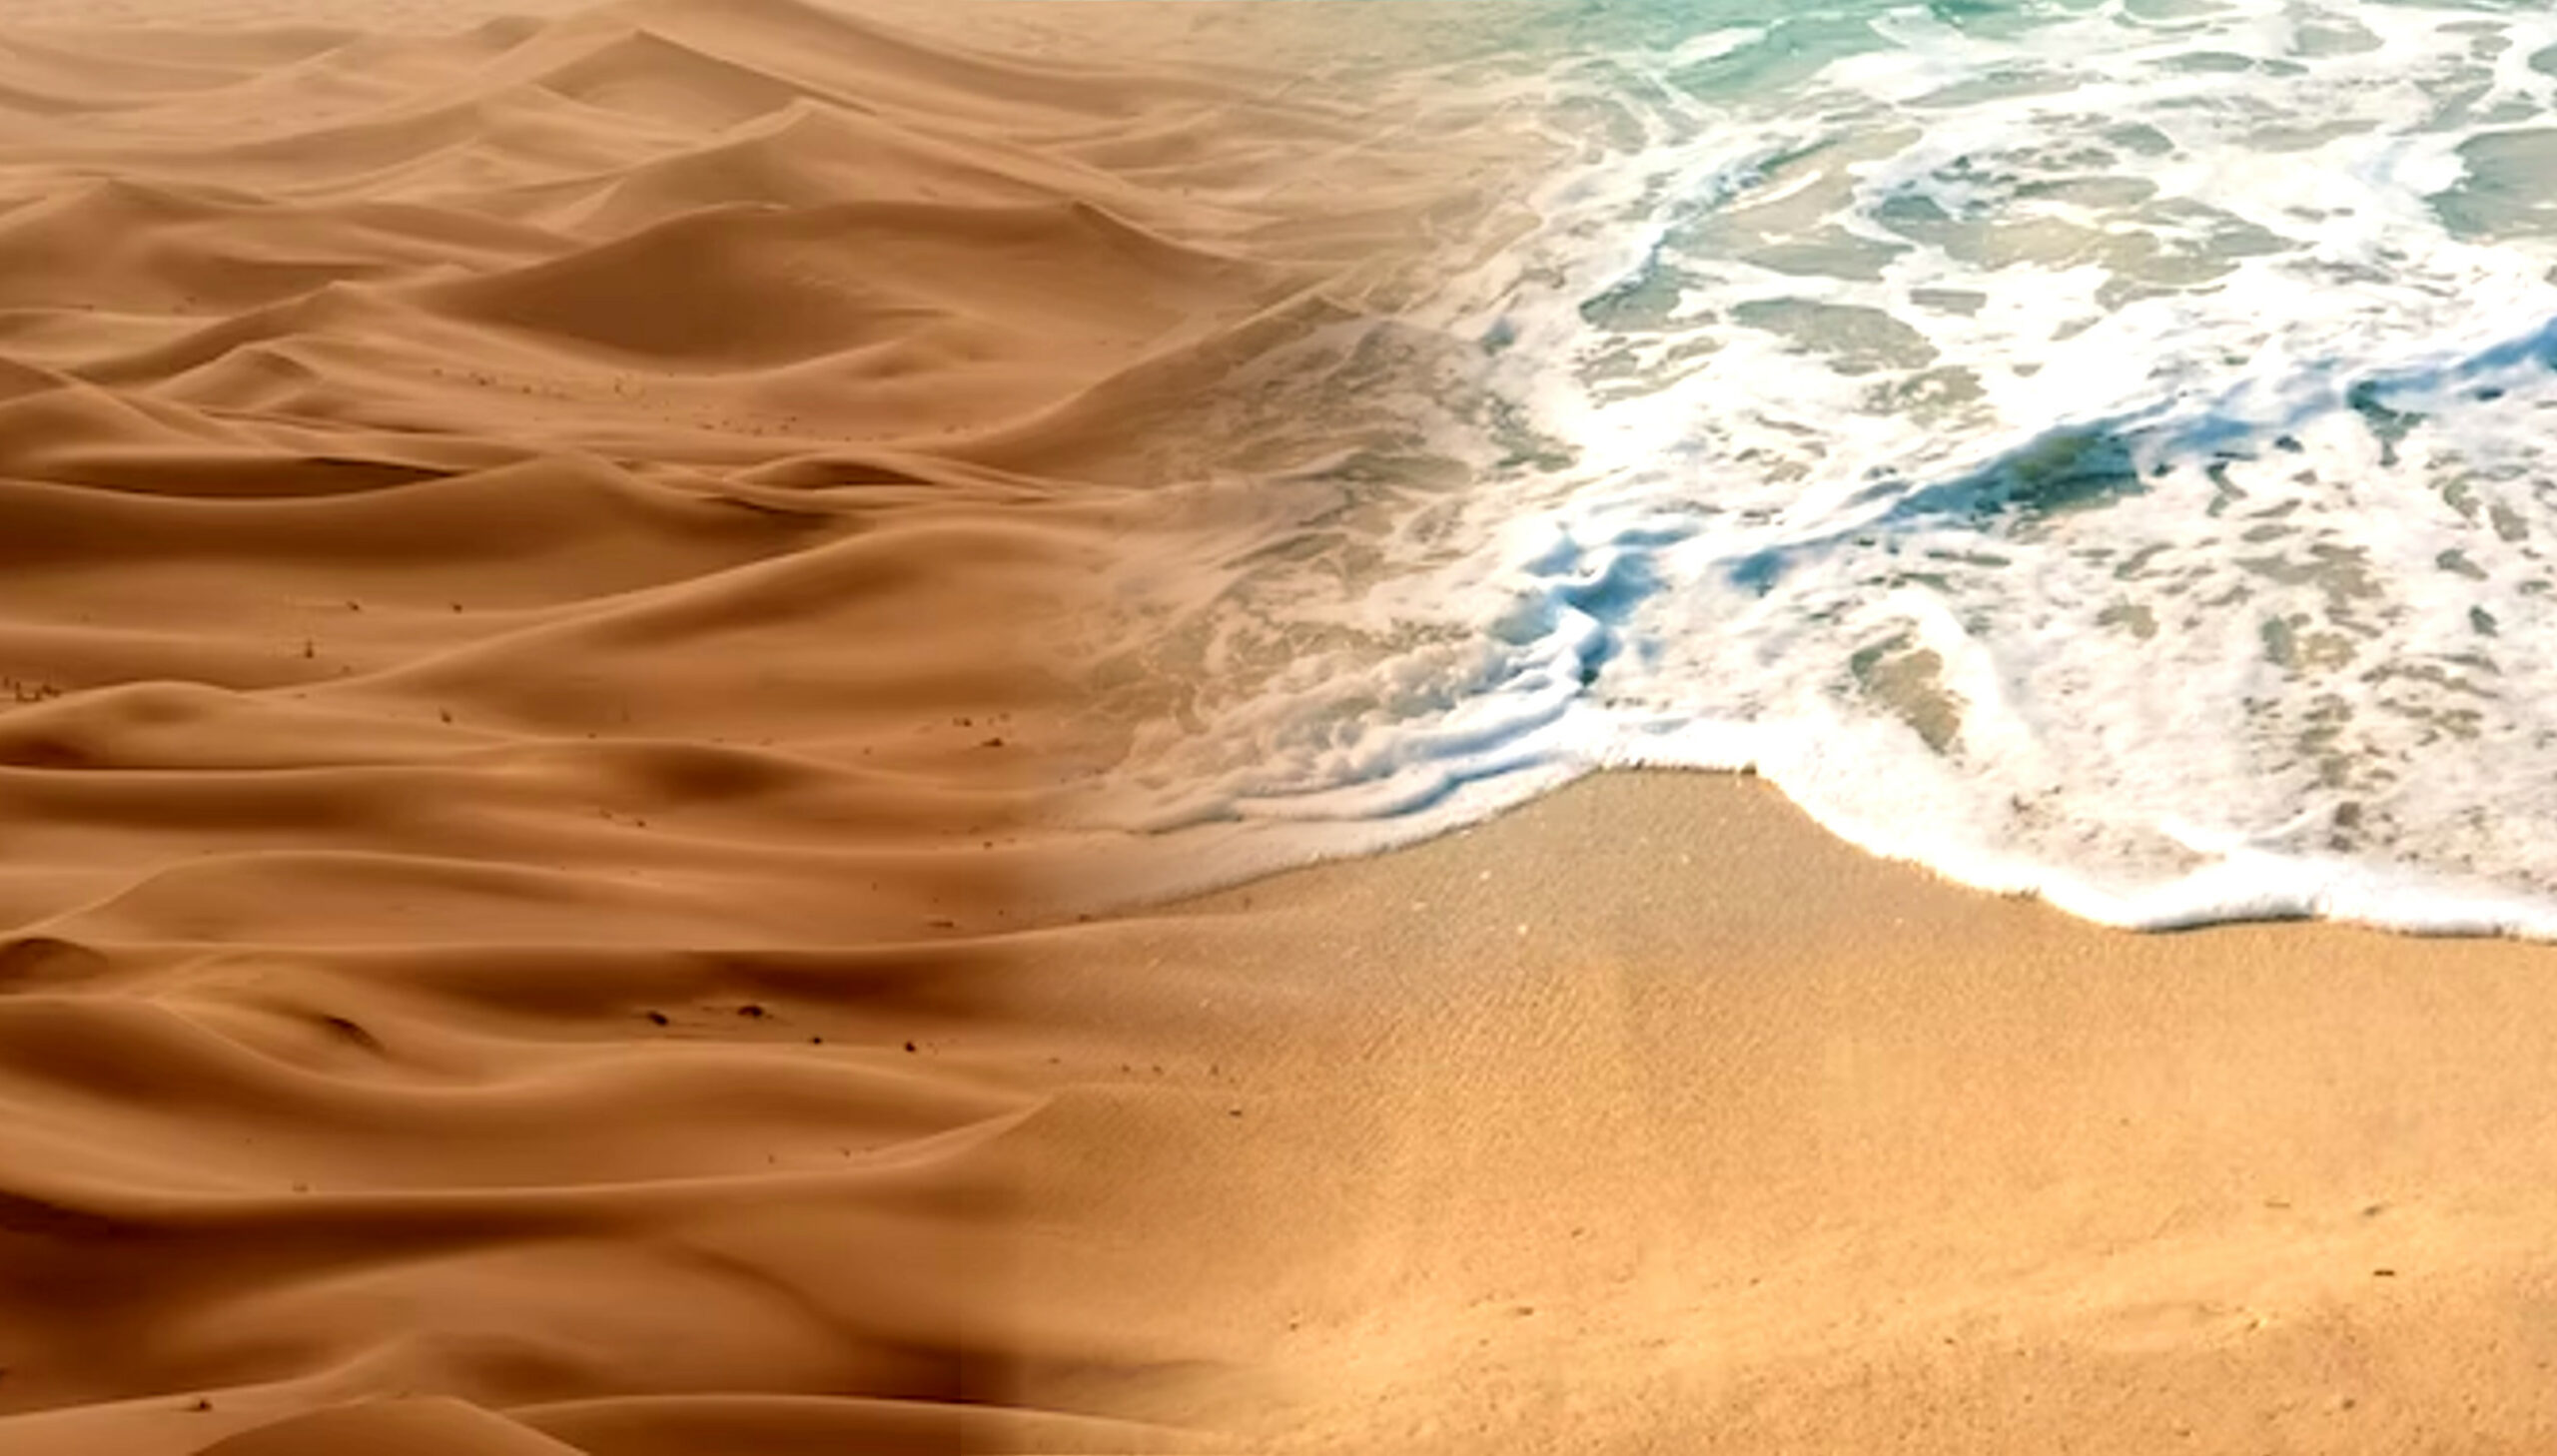 Arena del desierto (izquierda) vs arena de playa (Correcto) comparación que muestra las diferencias en color y textura.